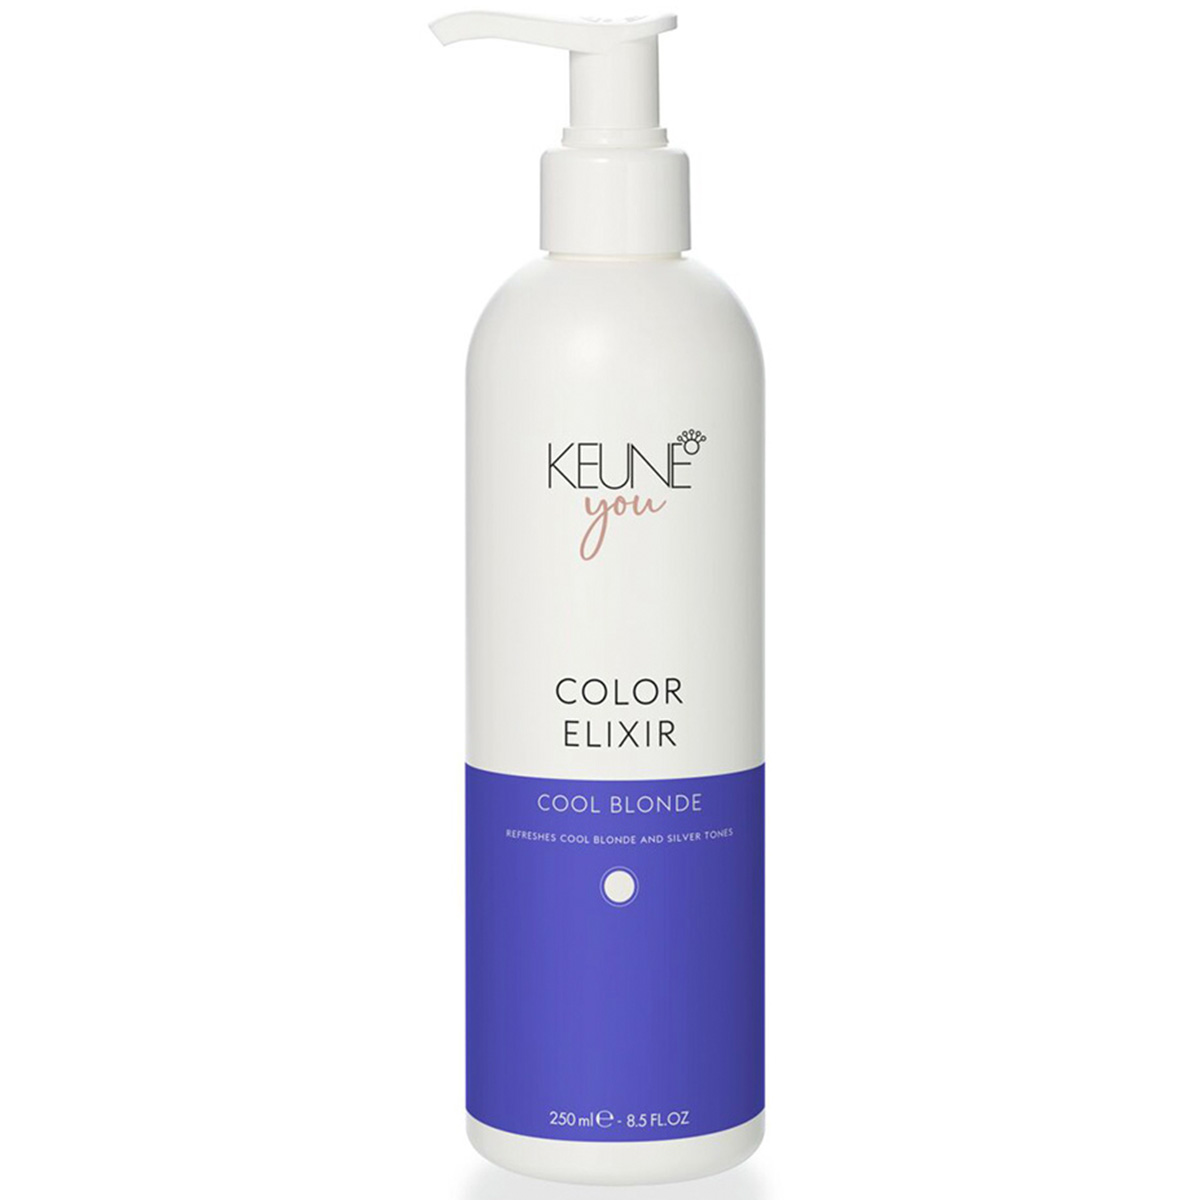 Keune Эликсир для светлых и седых волос Холодный Блонд Color Elixir Cool Blonde, 250 мл (Keune, You) цена и фото